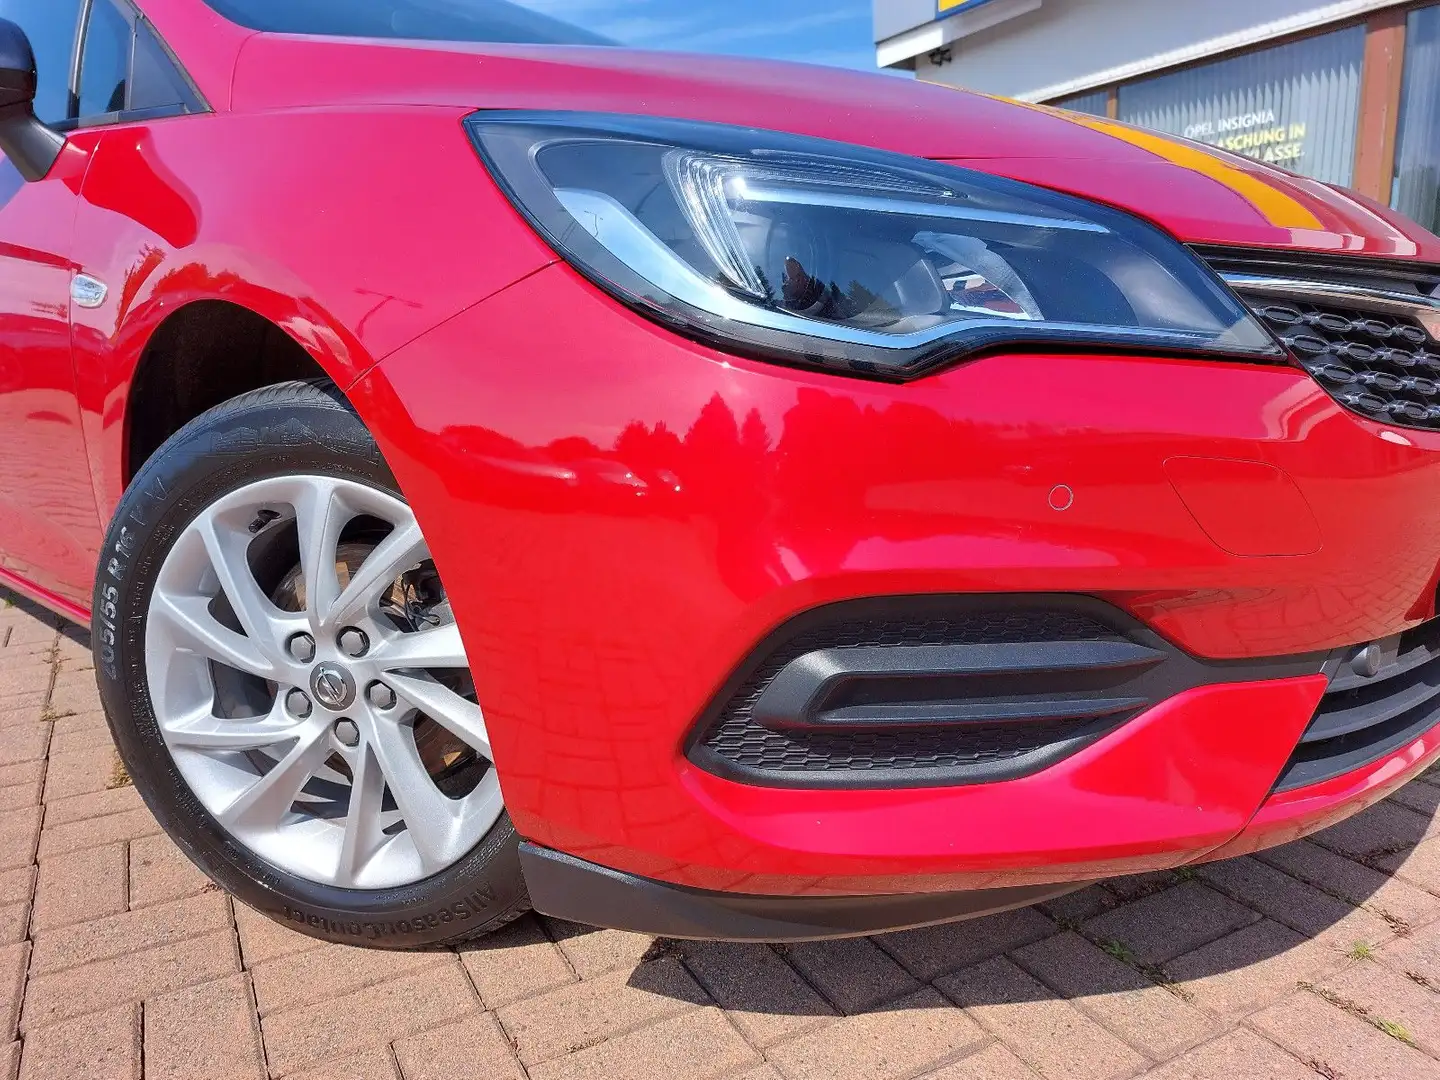 Opel Astra in rot und metallic rot gebraucht kaufen bei heycar